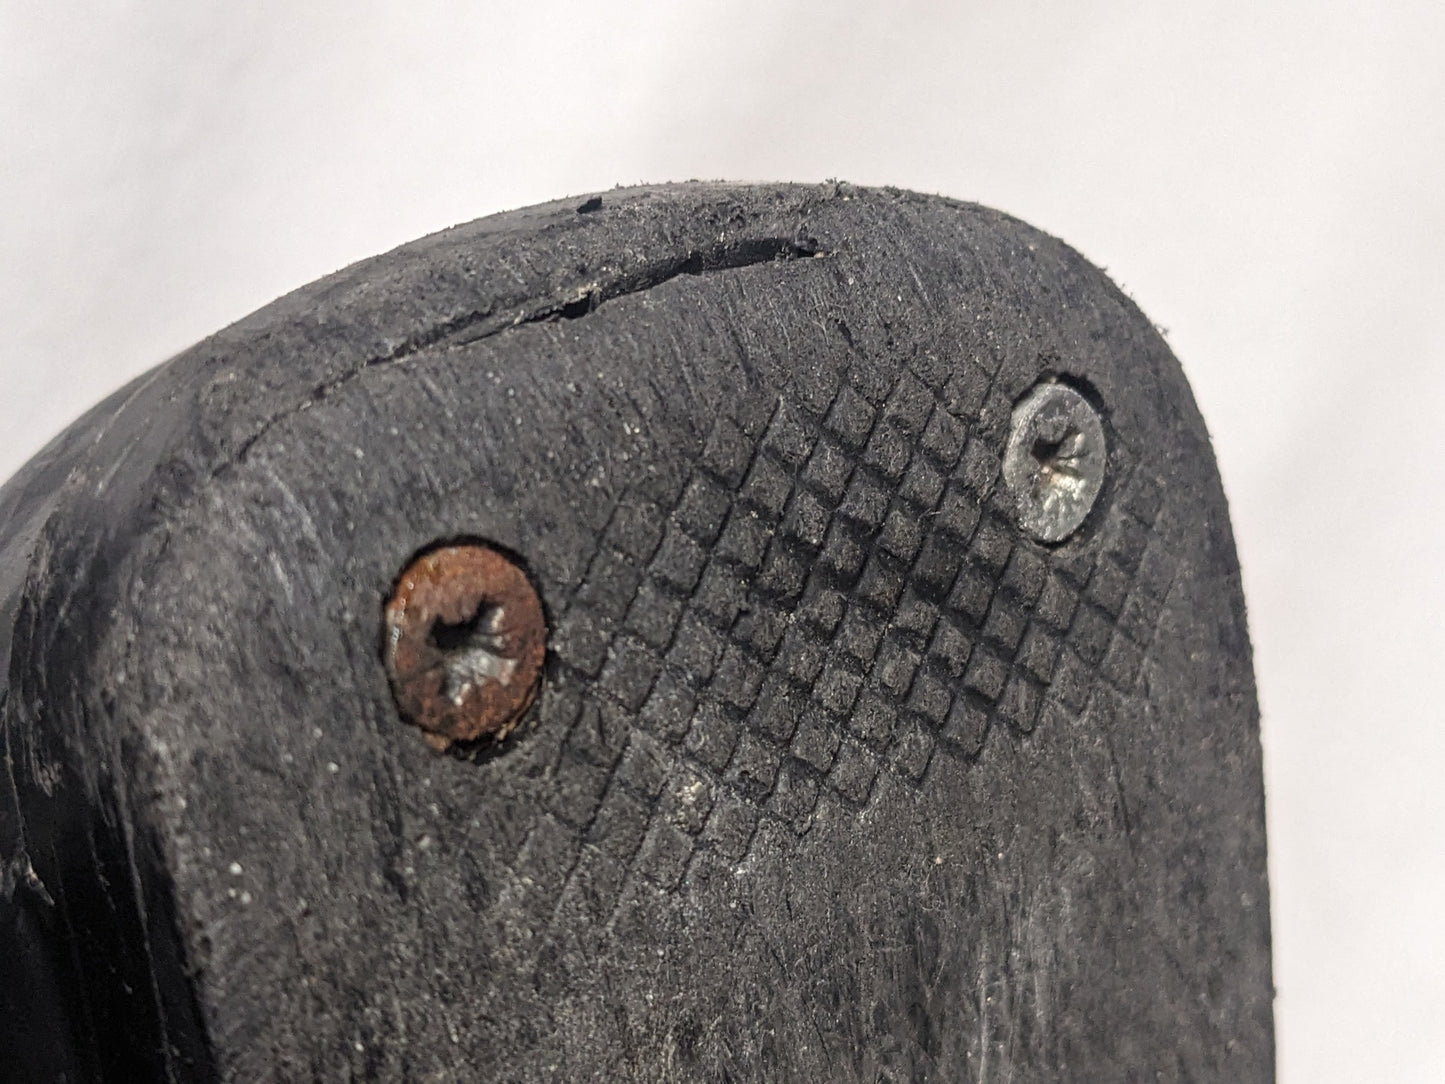 Salomon Team Ski Boots Size 24.5 Color Black Condition Used